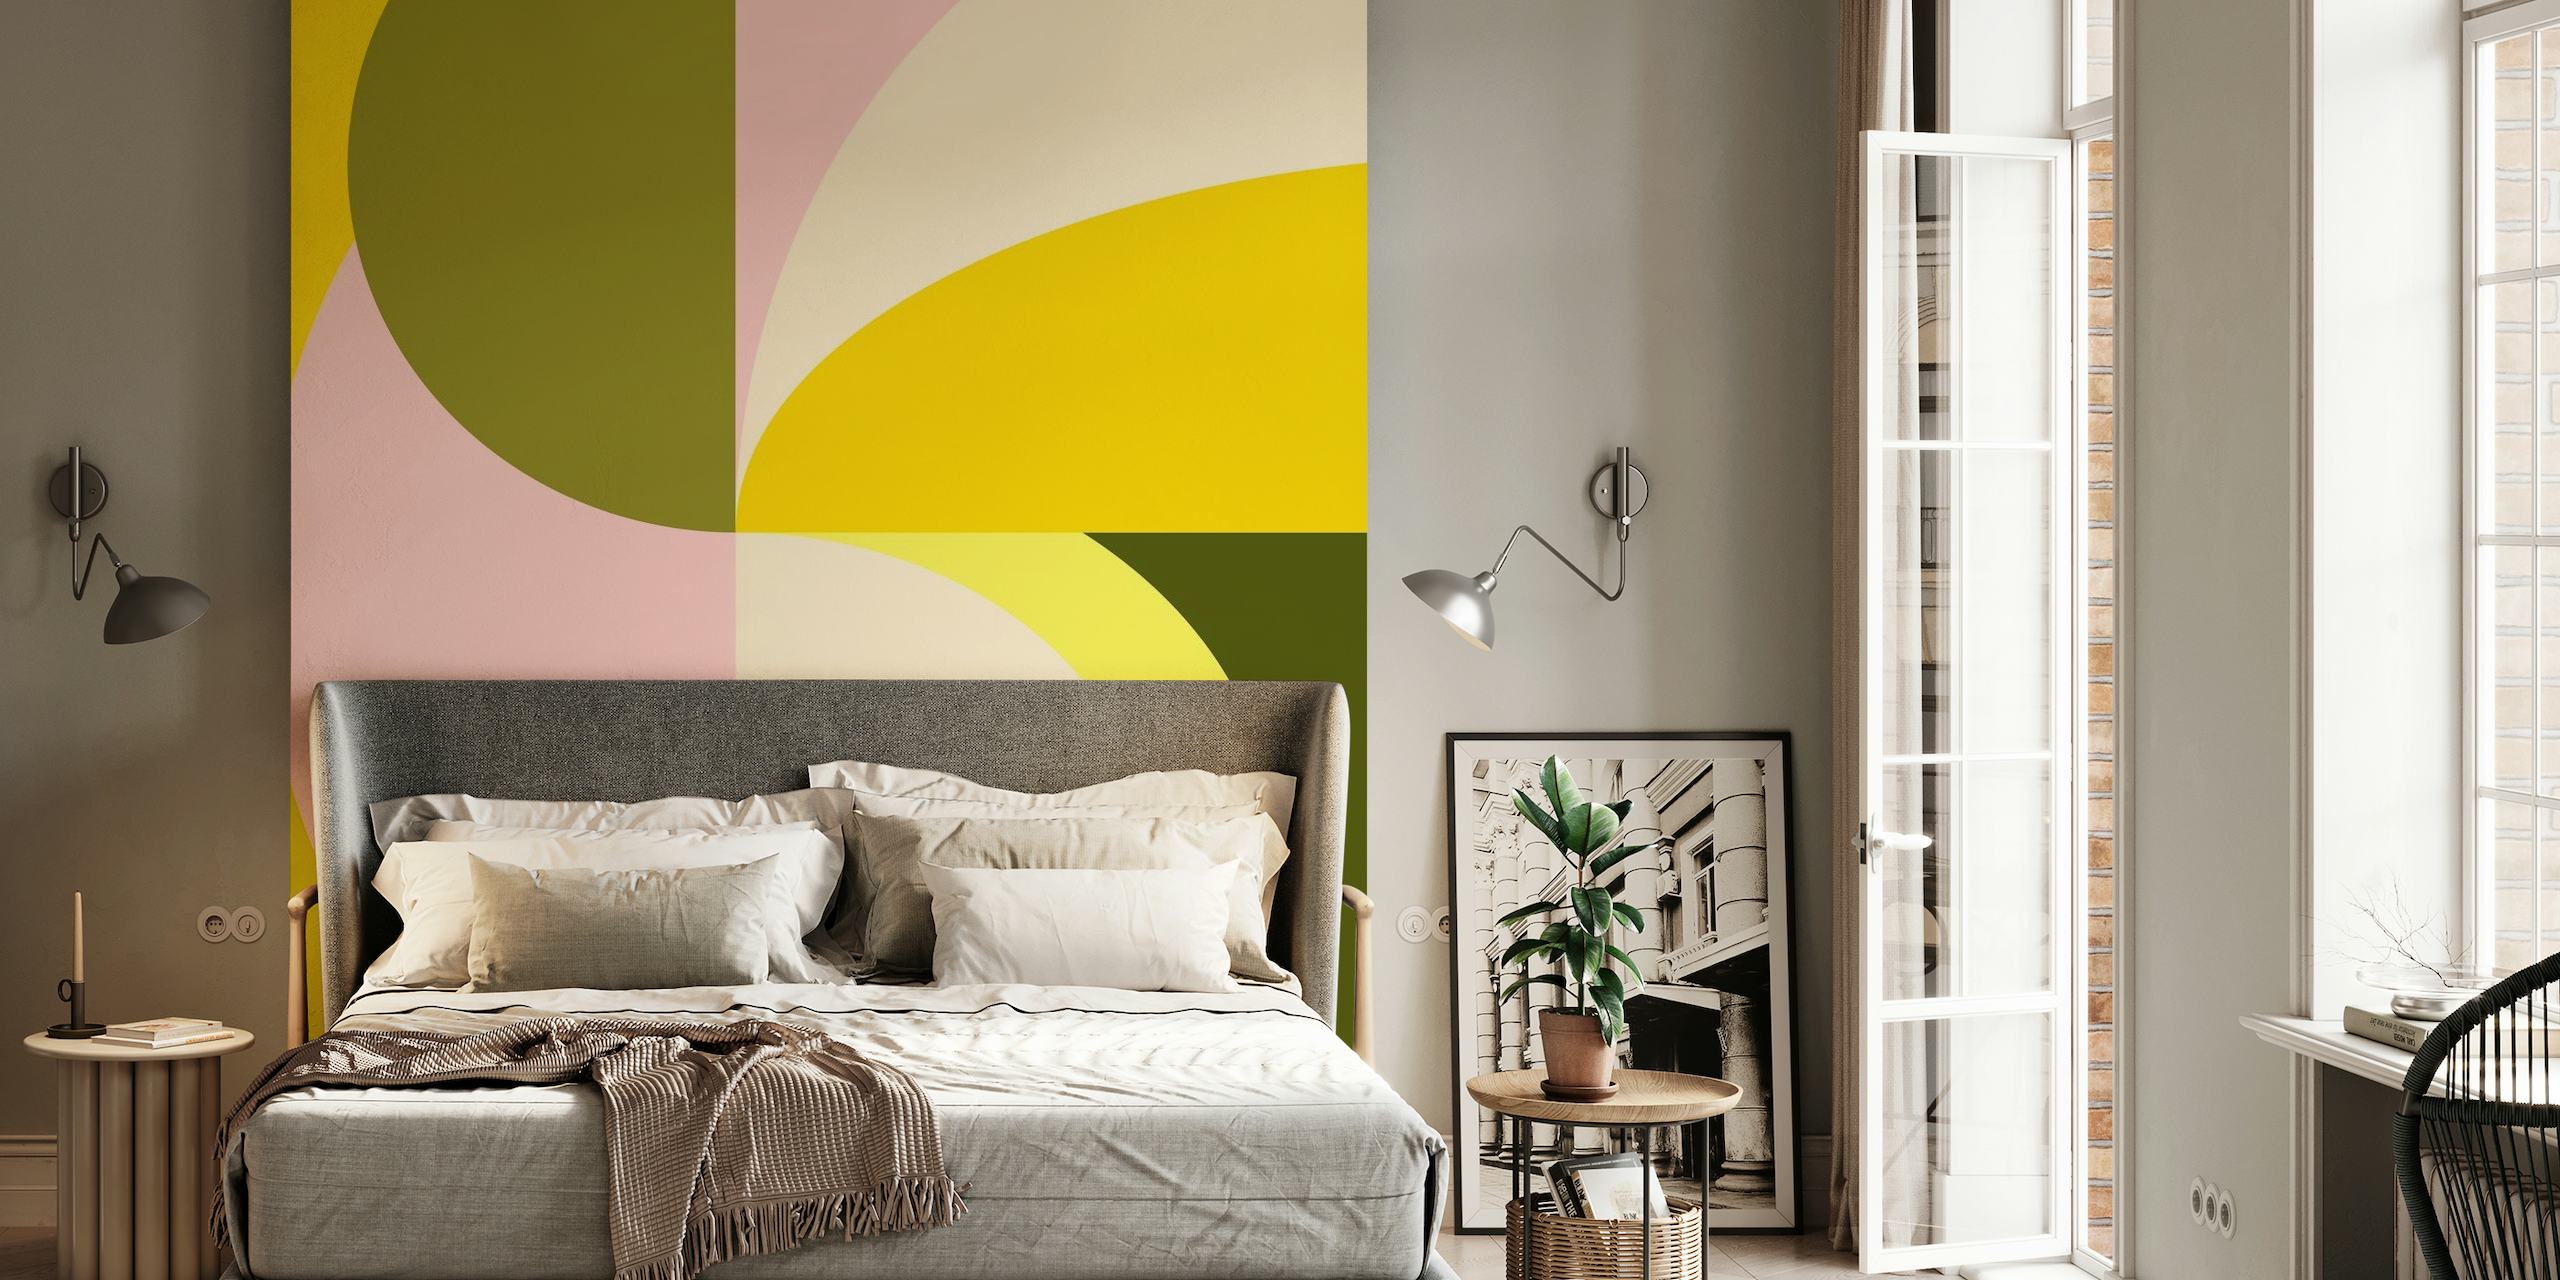 Veggmaleri med abstrakte geometriske former med sitrusfarger, inkludert gule, rosa og grønne toner